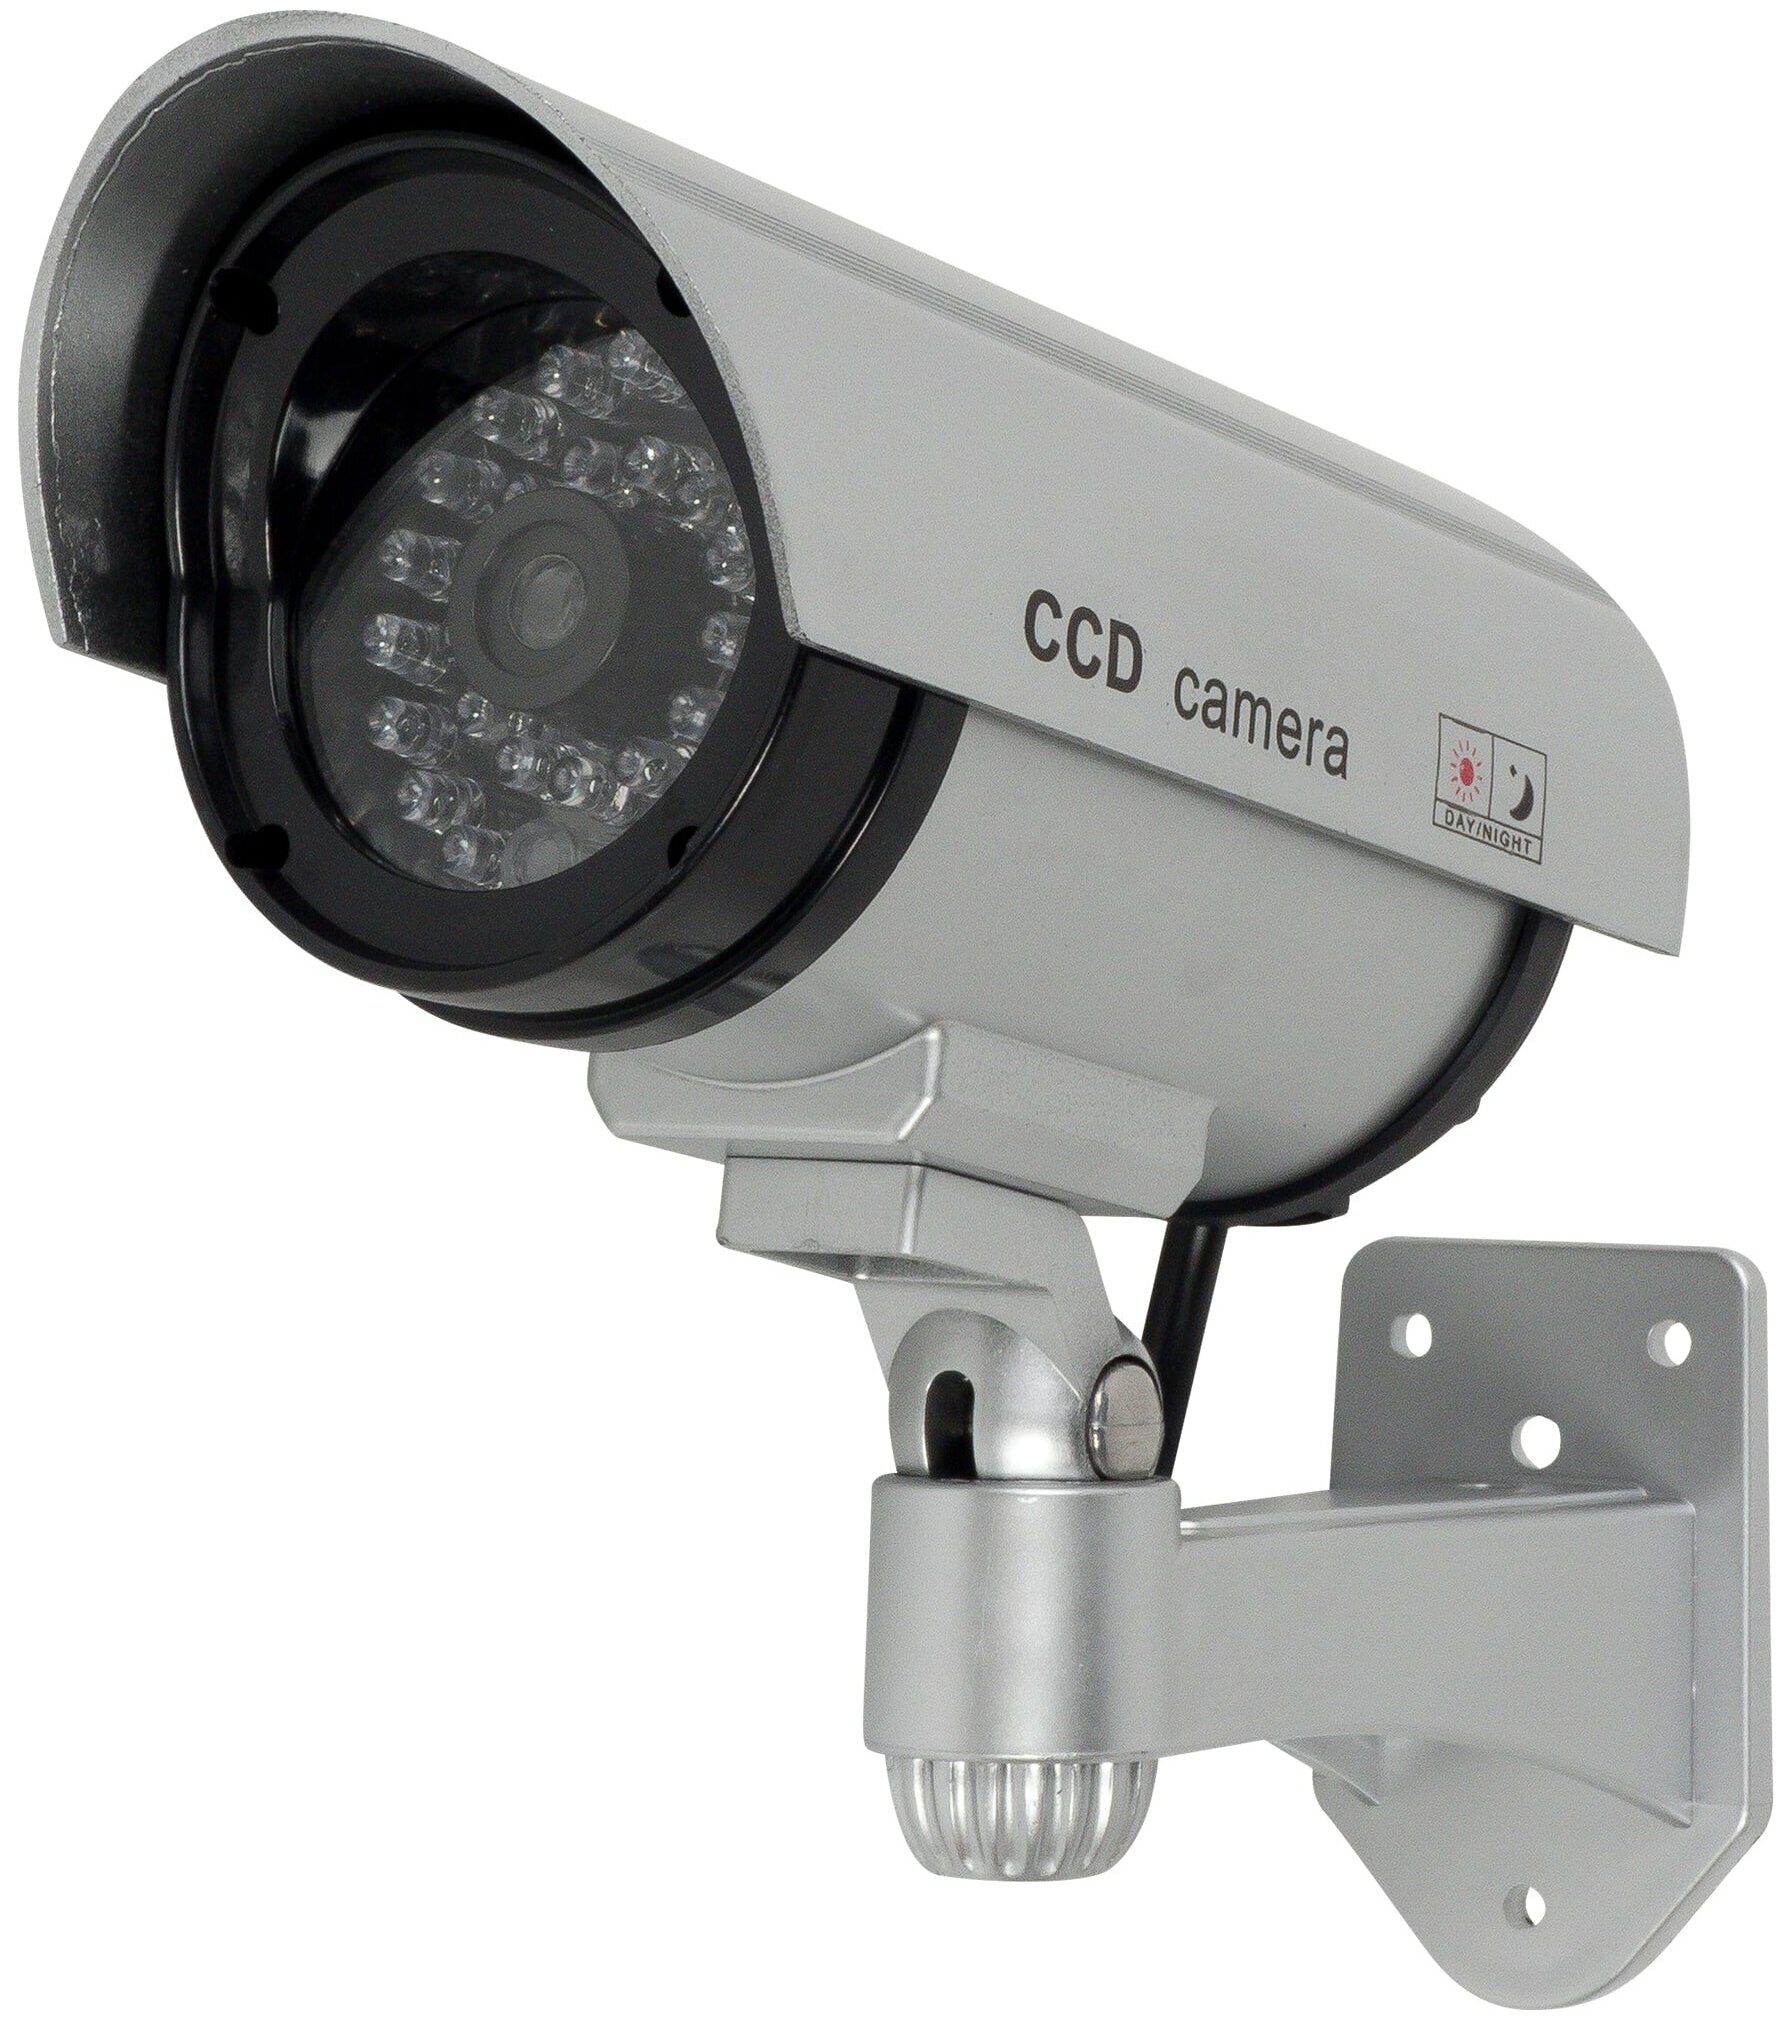 Муляж камеры видеонаблюдения дома с мигающим красным светодиодом муляж камеры видеонаблюдения urm ccd camera